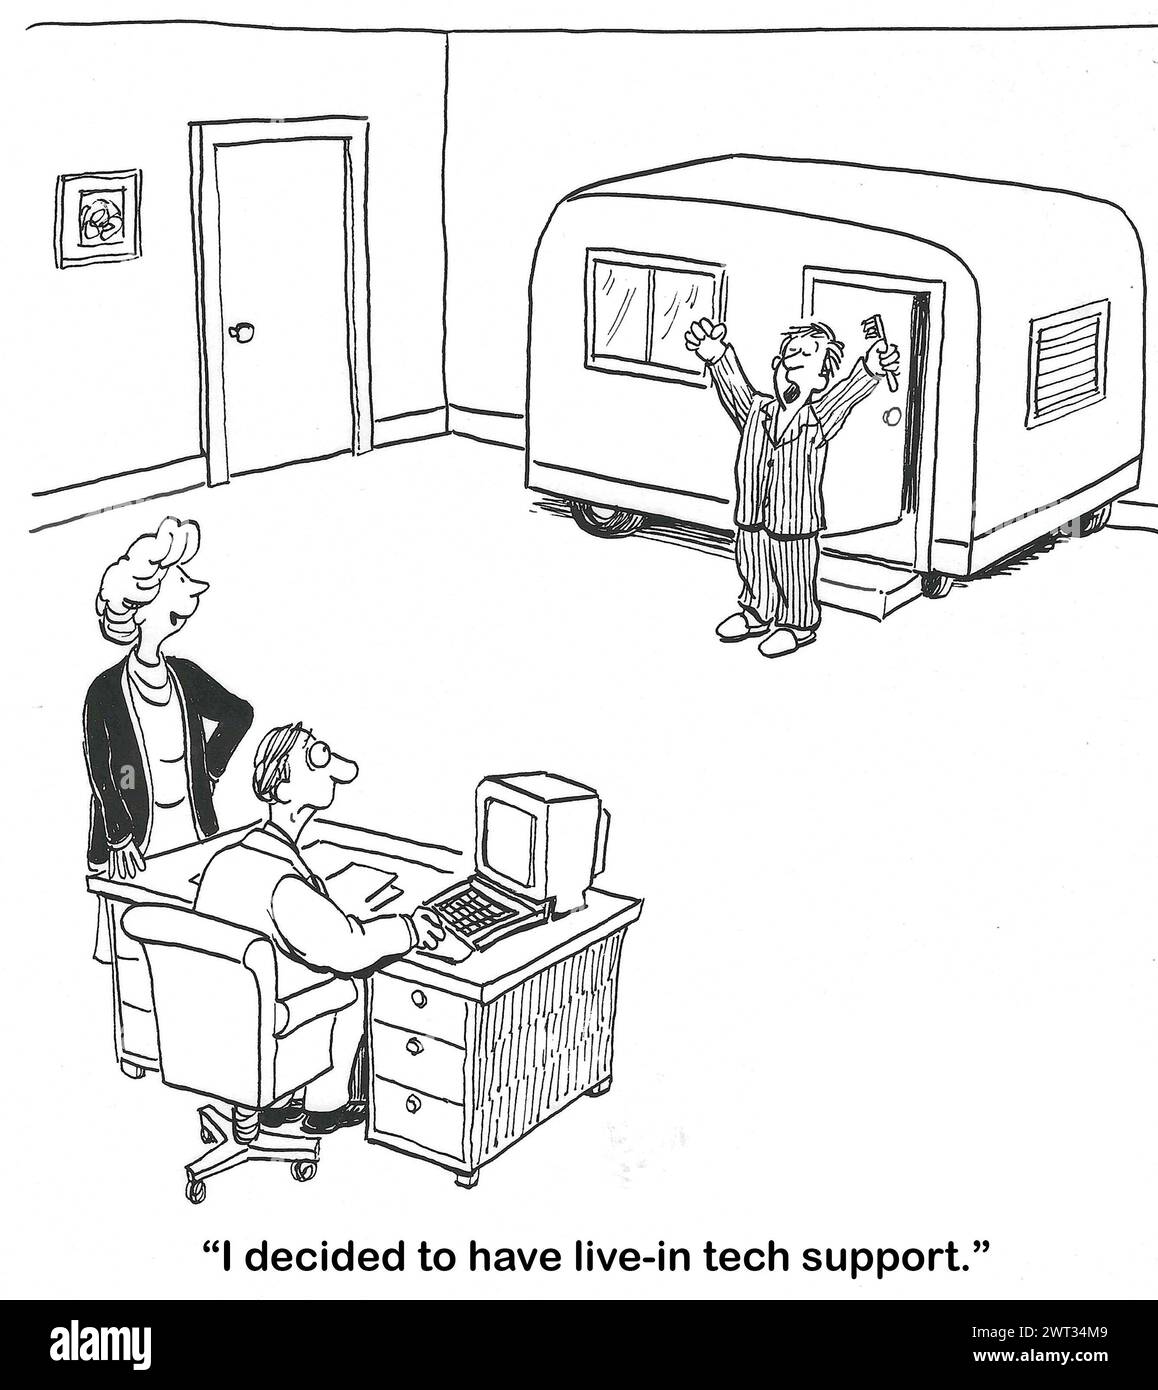 BW-Cartoon eines Geschäftspartners, das entschieden hat, dass sie Live-in-Tech-Support benötigen. Stockfoto